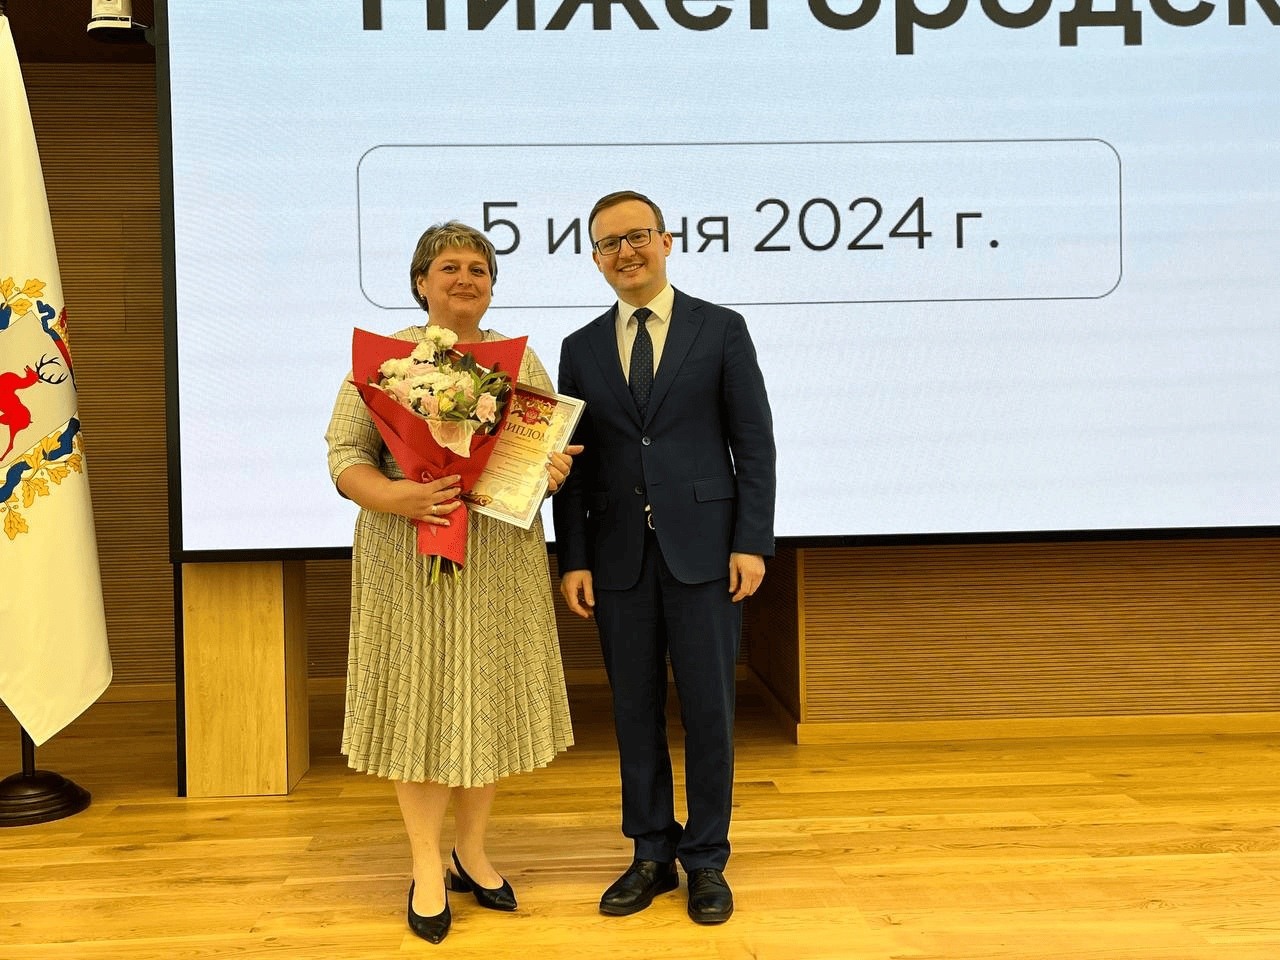 Воспитатель Наталья Борщ выиграла областной конкурс профмастерства